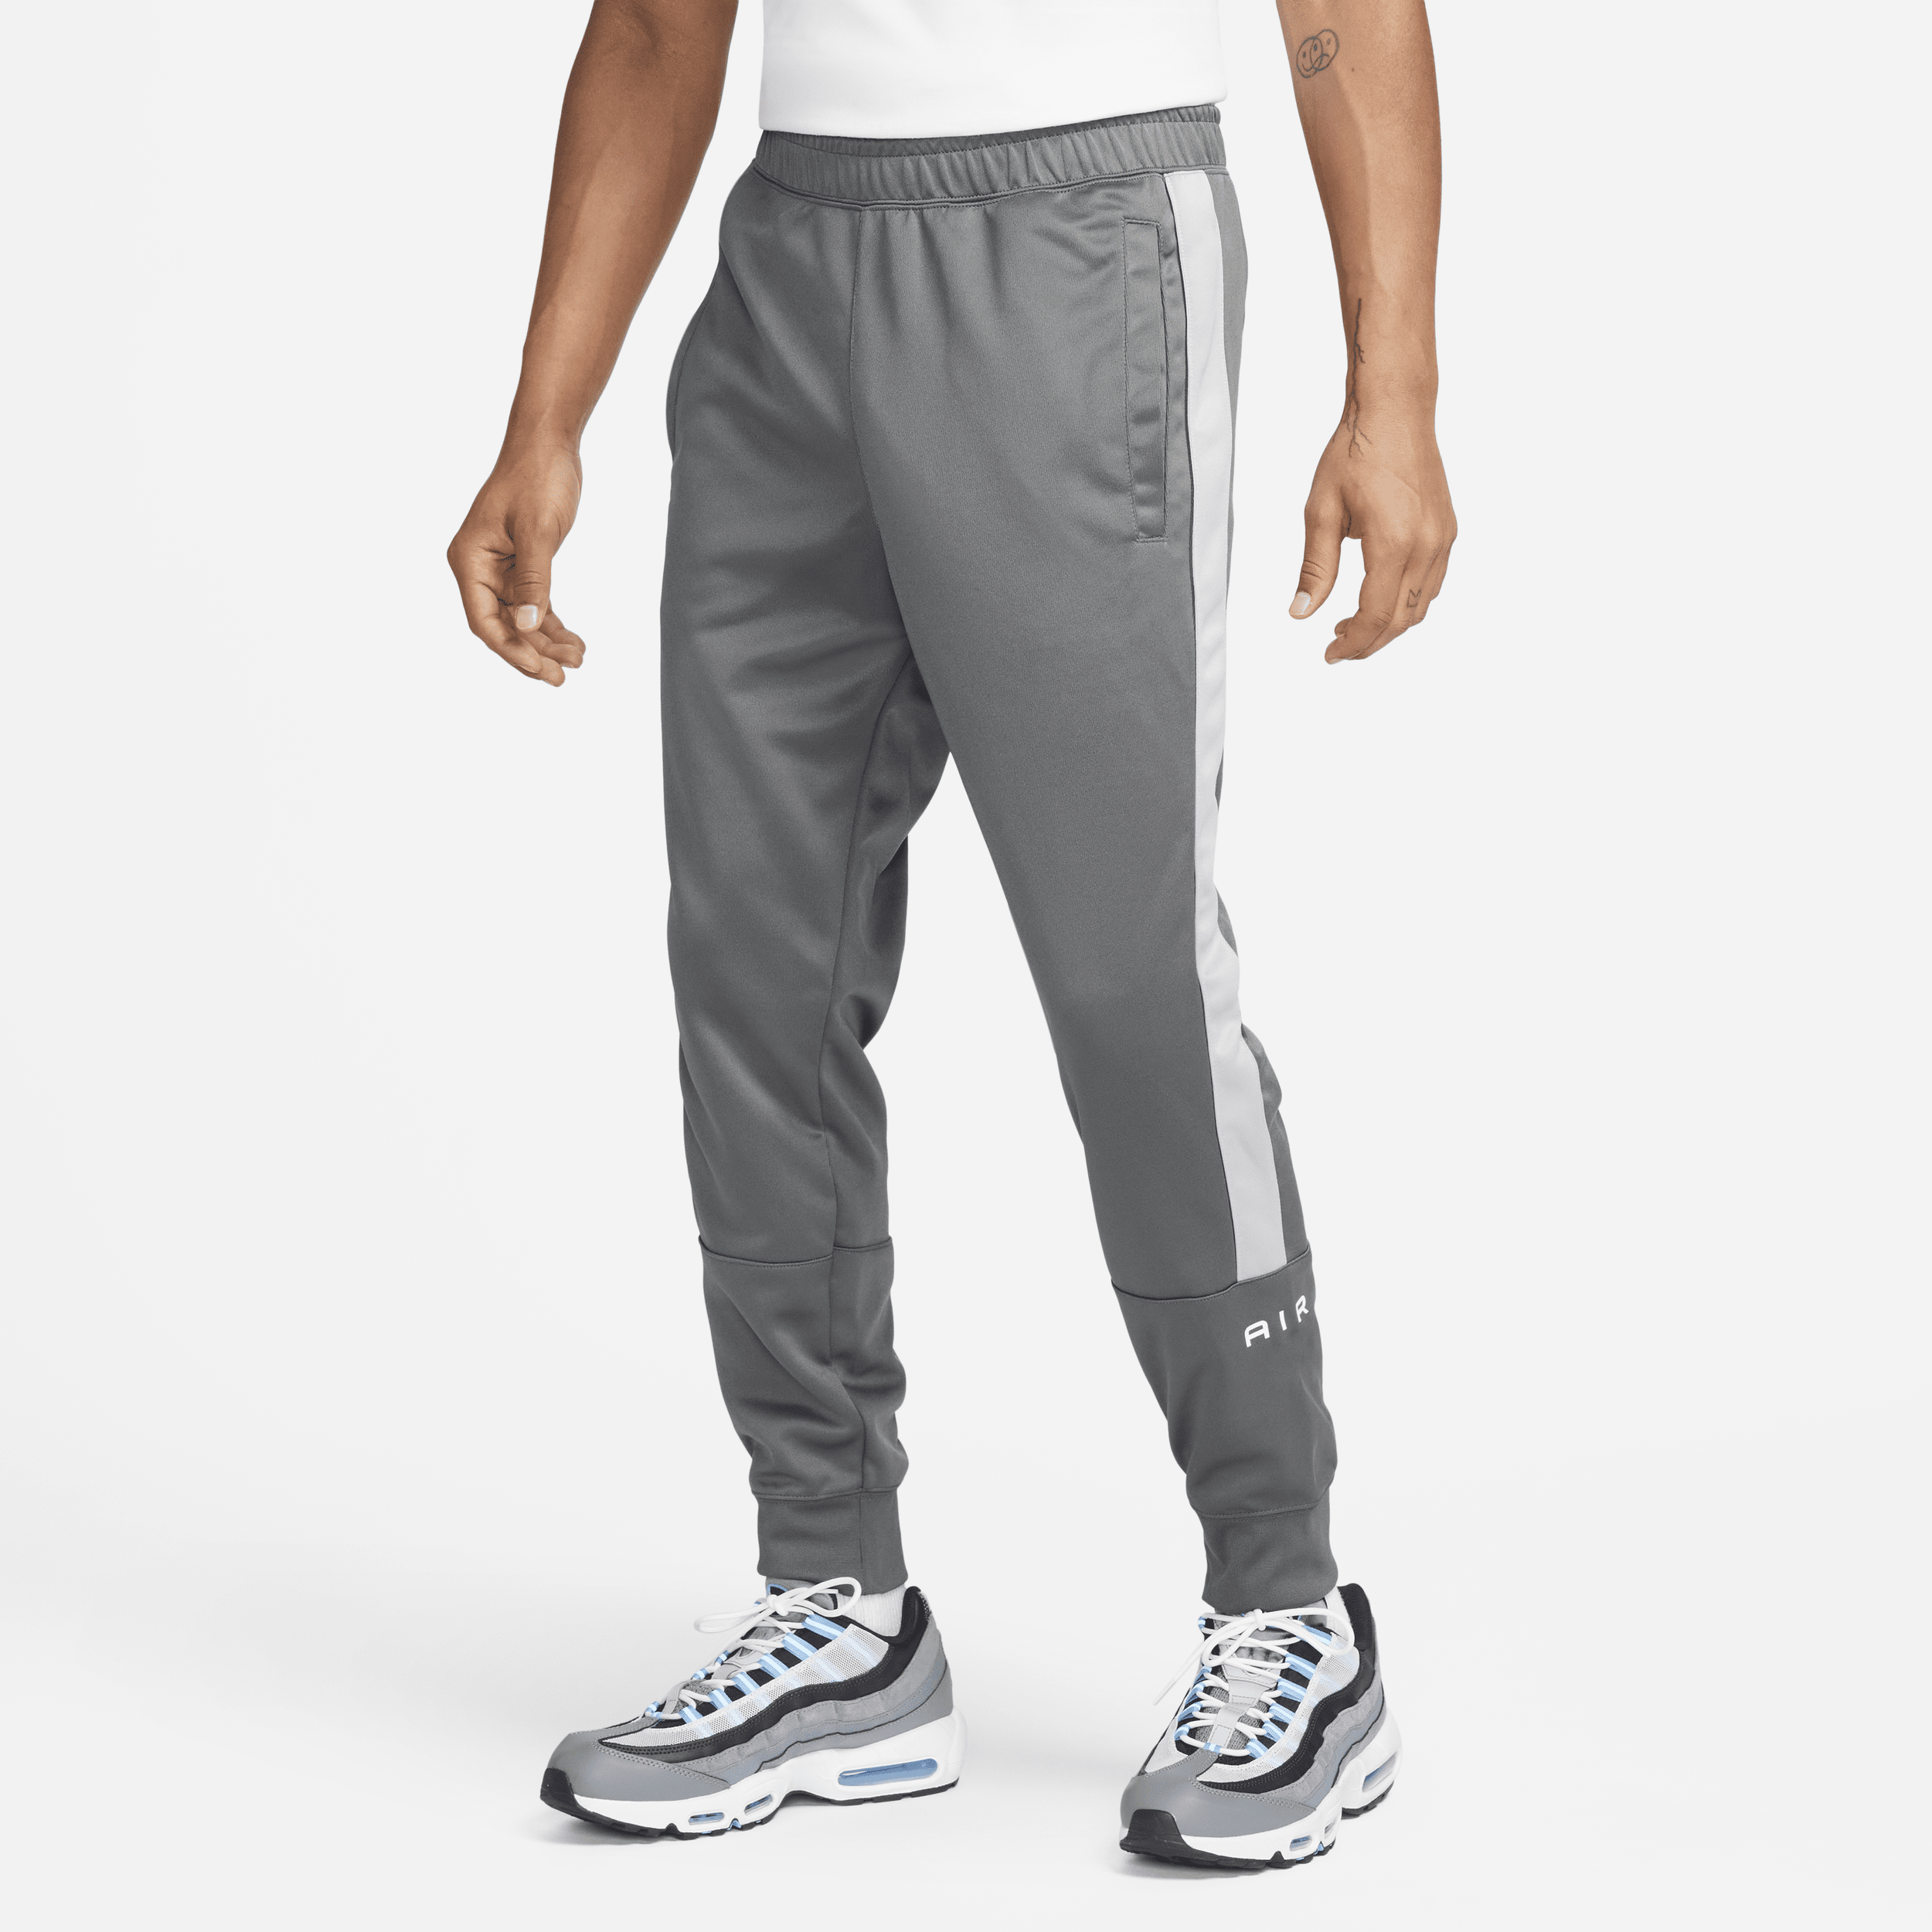 Nike Air Pantalón deportivo - Hombre - Gris